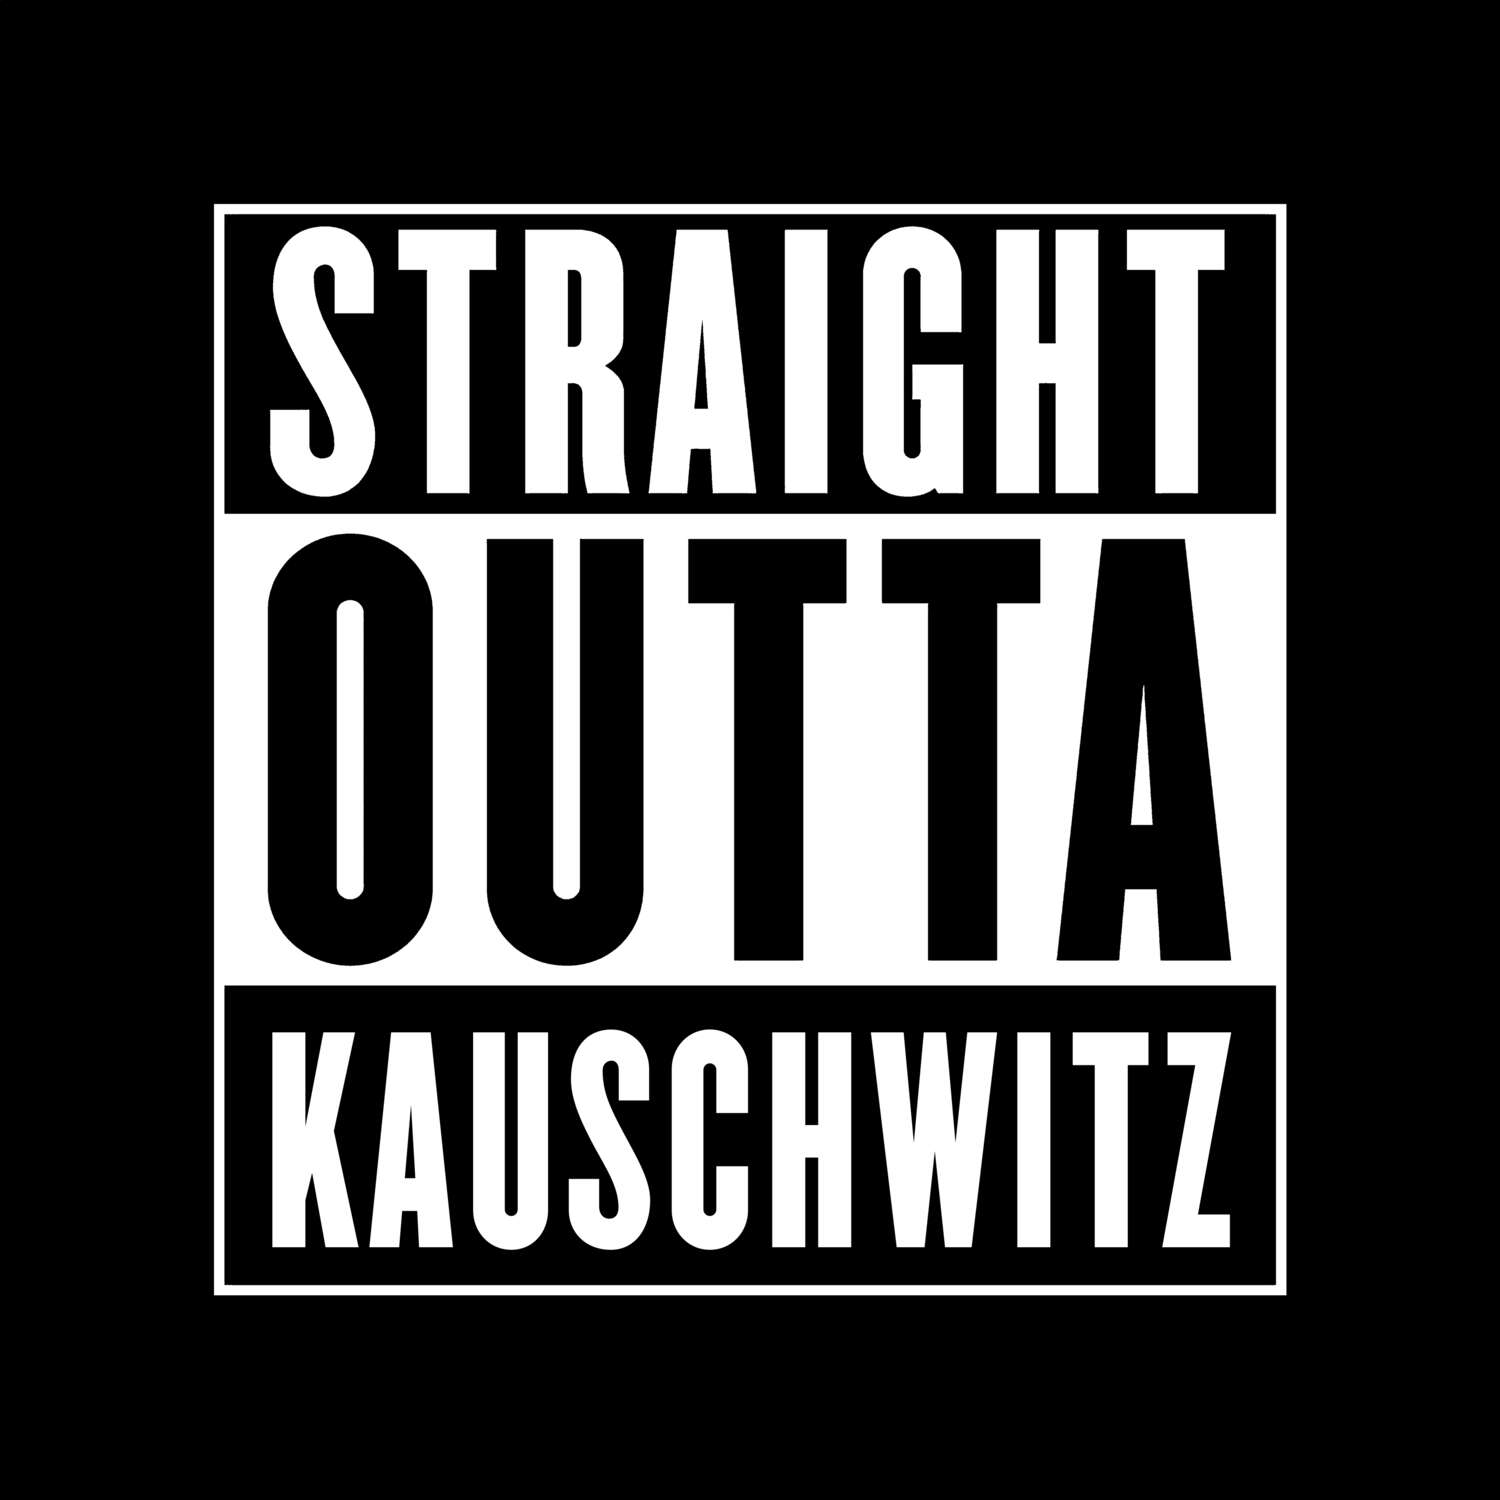 Kauschwitz T-Shirt »Straight Outta«